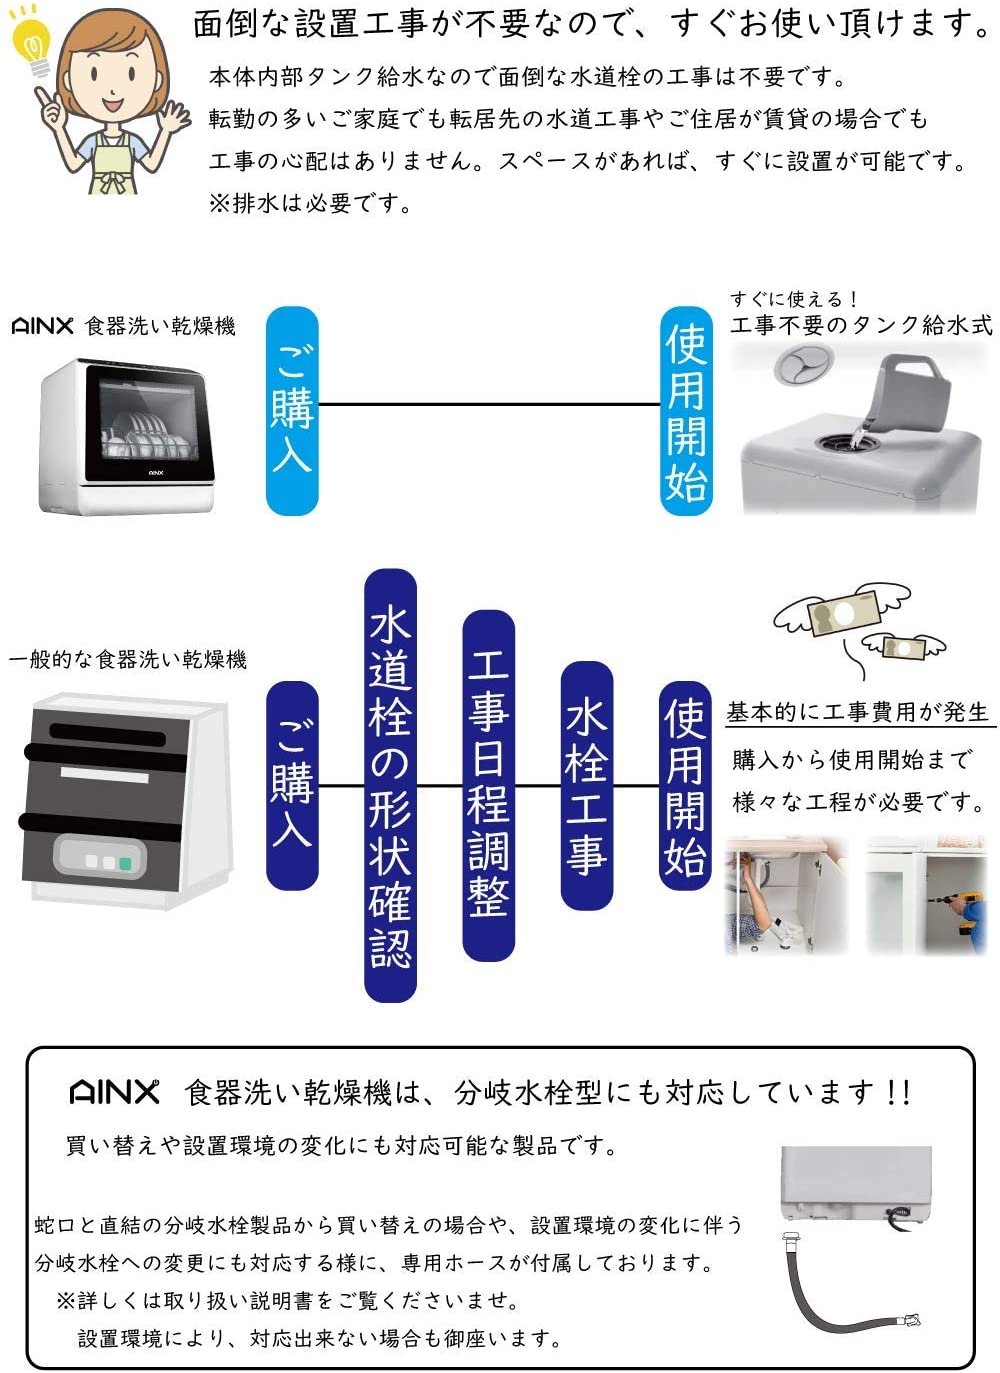 アイネクス AINX 食器洗い乾燥機 AX-S3W ホワイト(工事不要) デザイン家電,キッチン家電,食洗機 SKY MUSE（スカイミューズ）